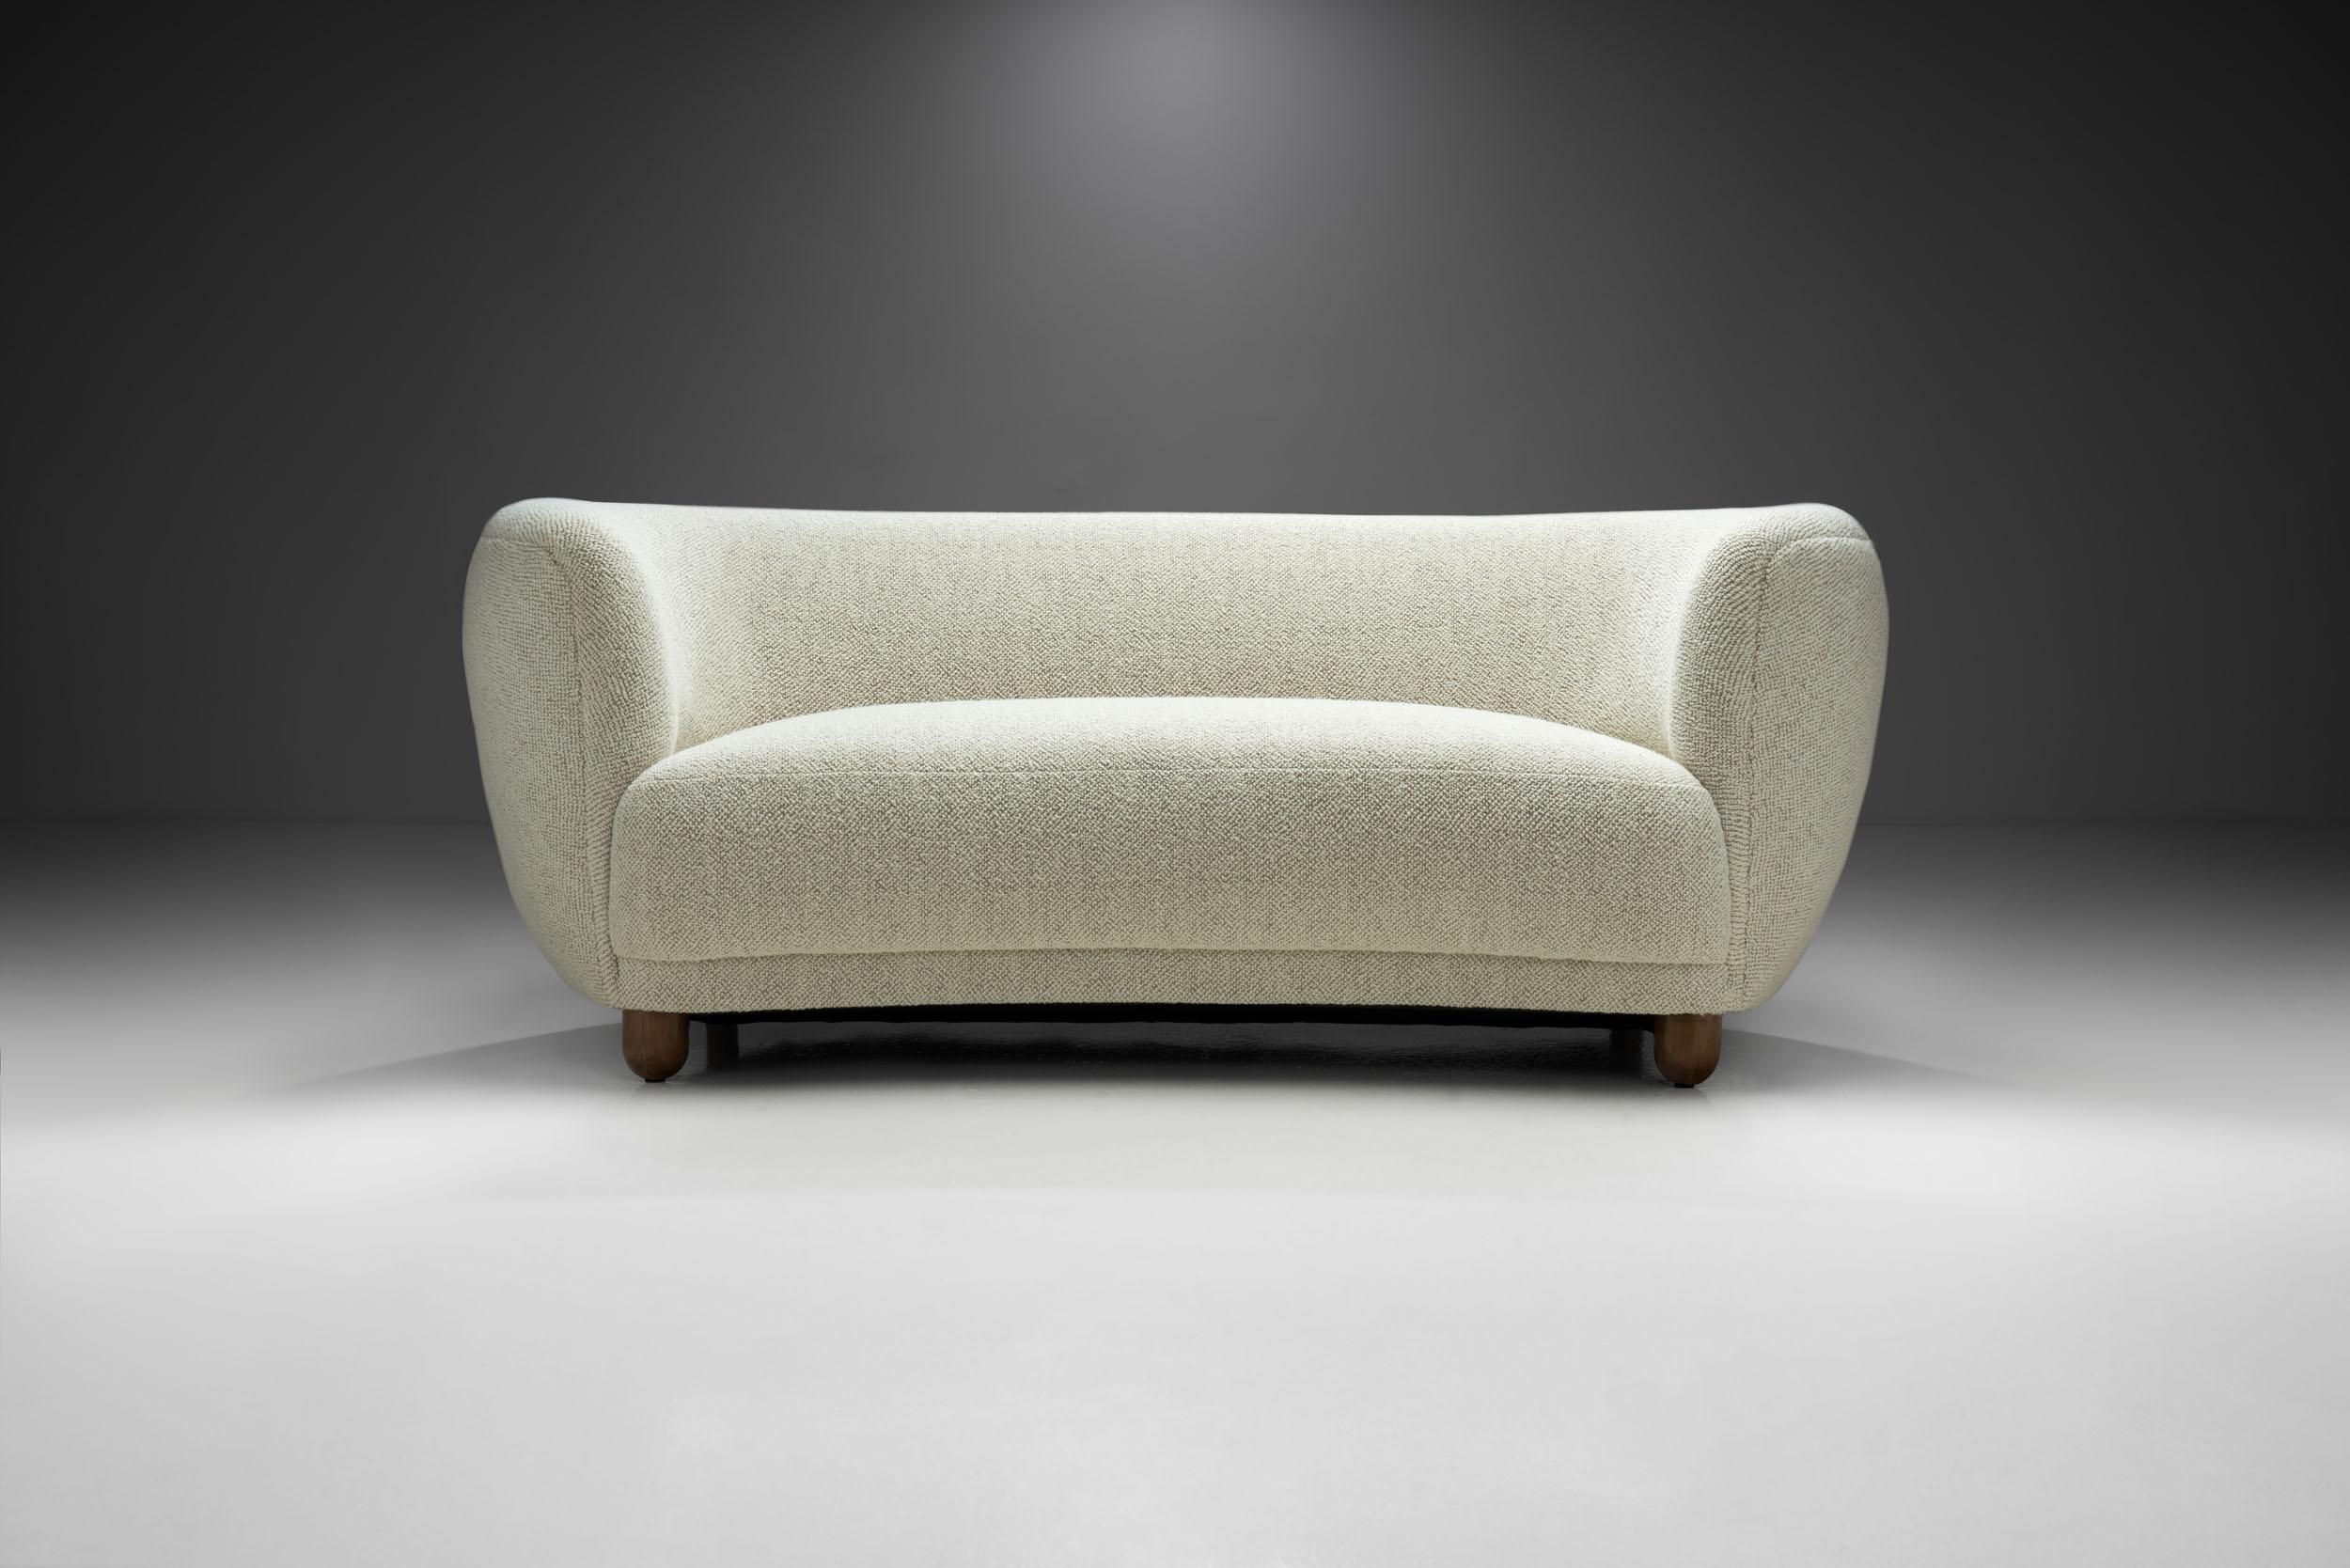 1940s sofa styles